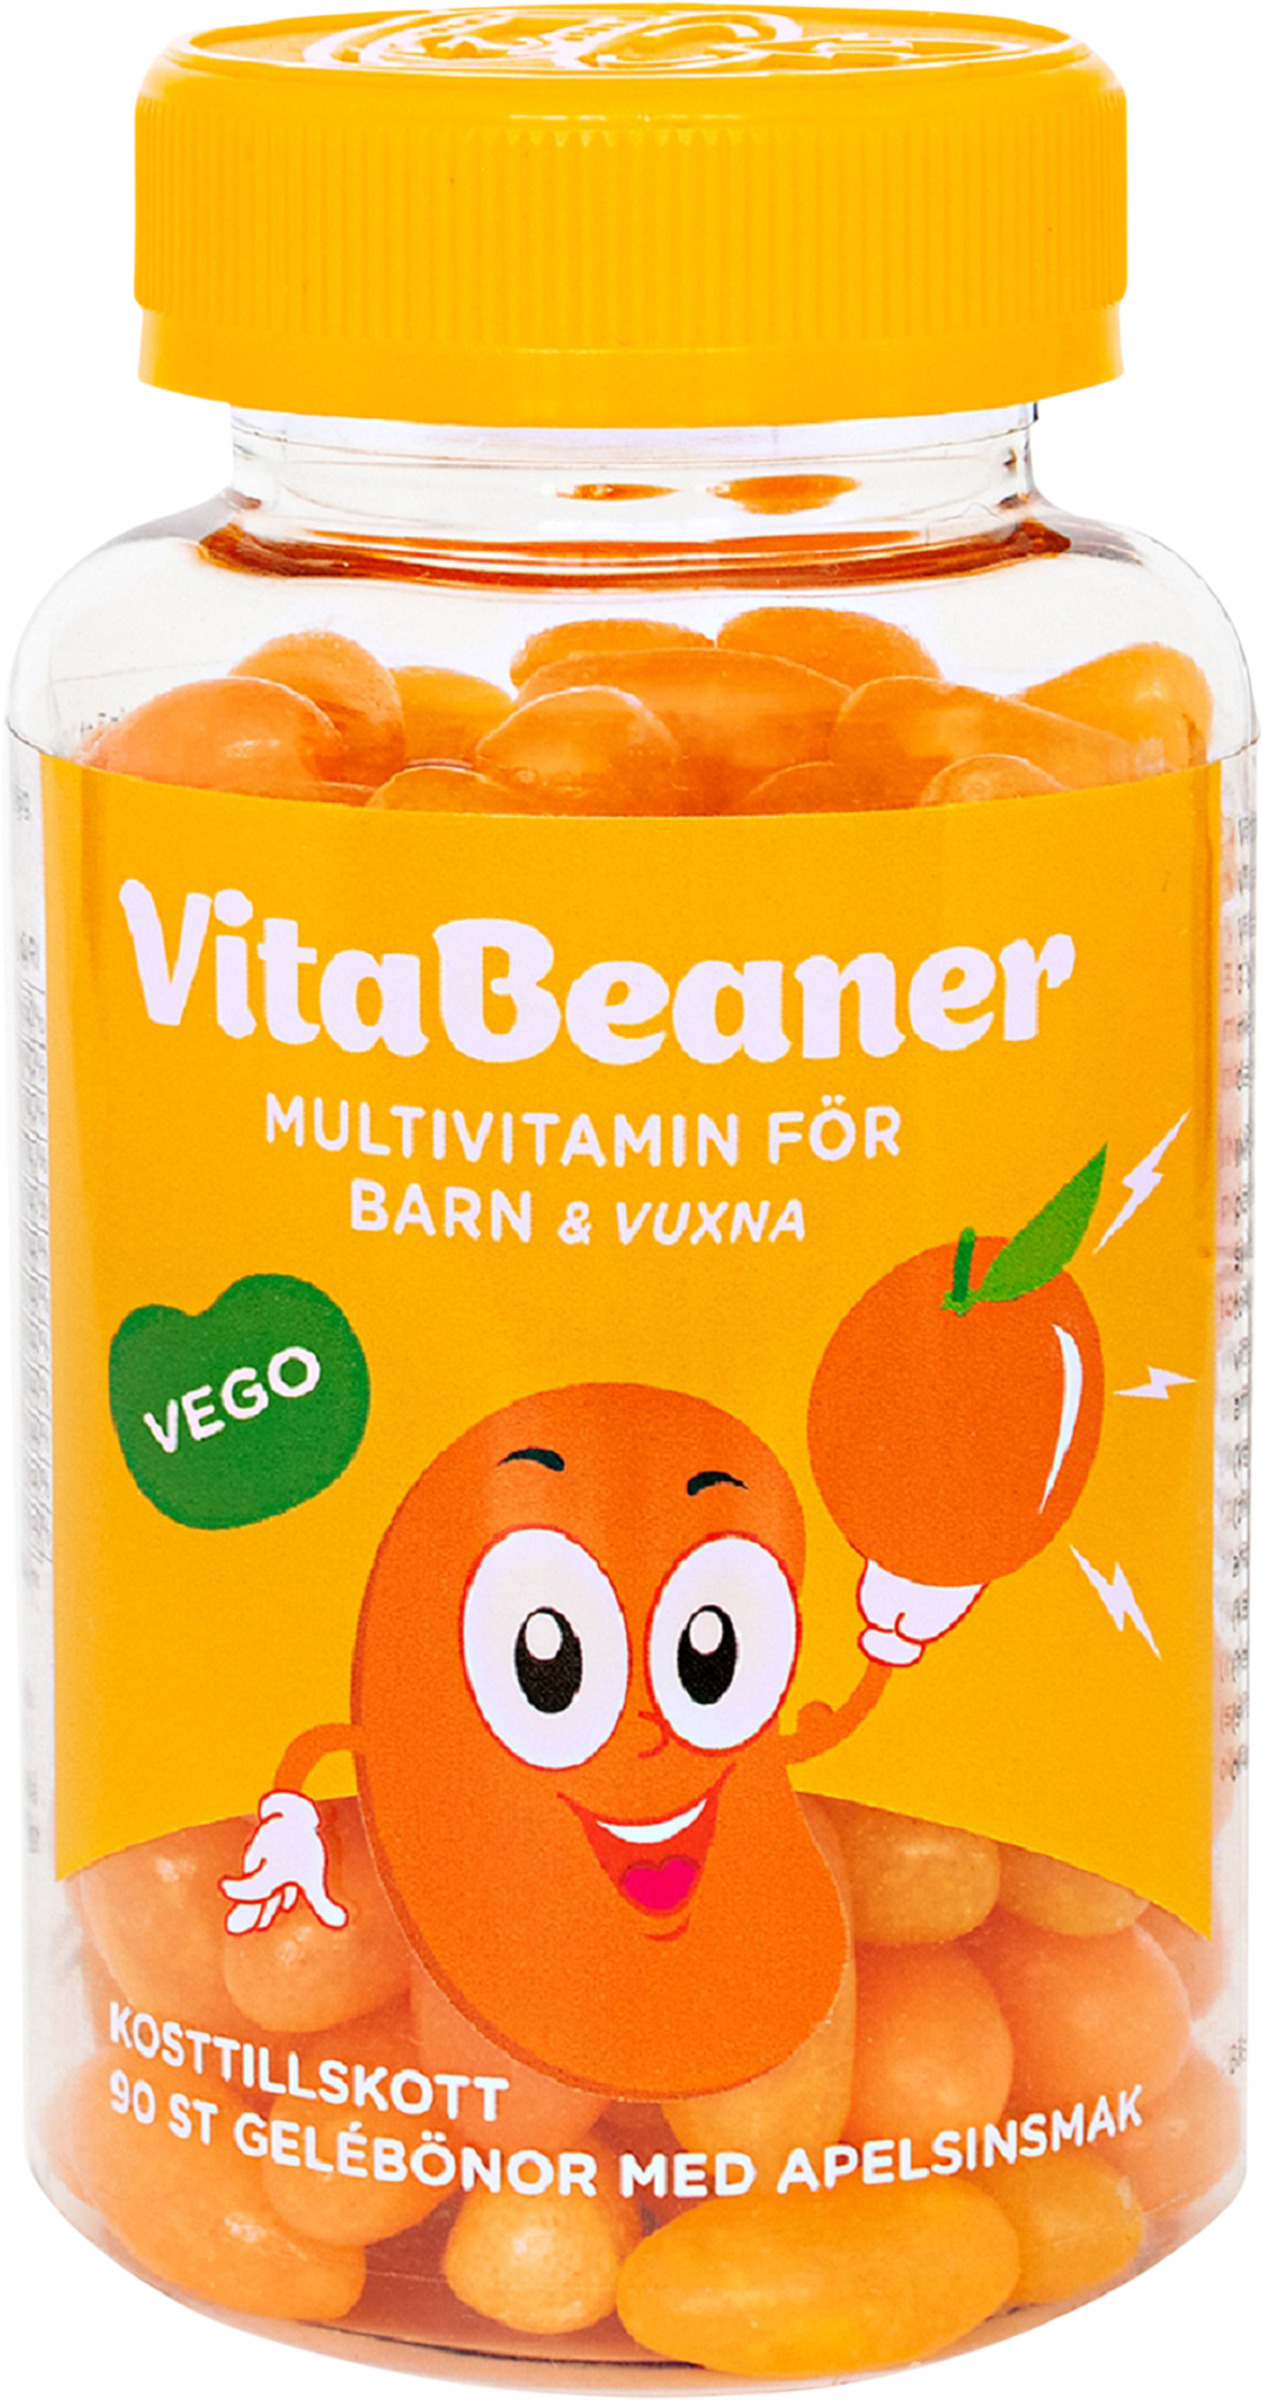 VitaBeaner Multivitamin Barn & Vuxna Apelsinsmak 90 tuggtabletter